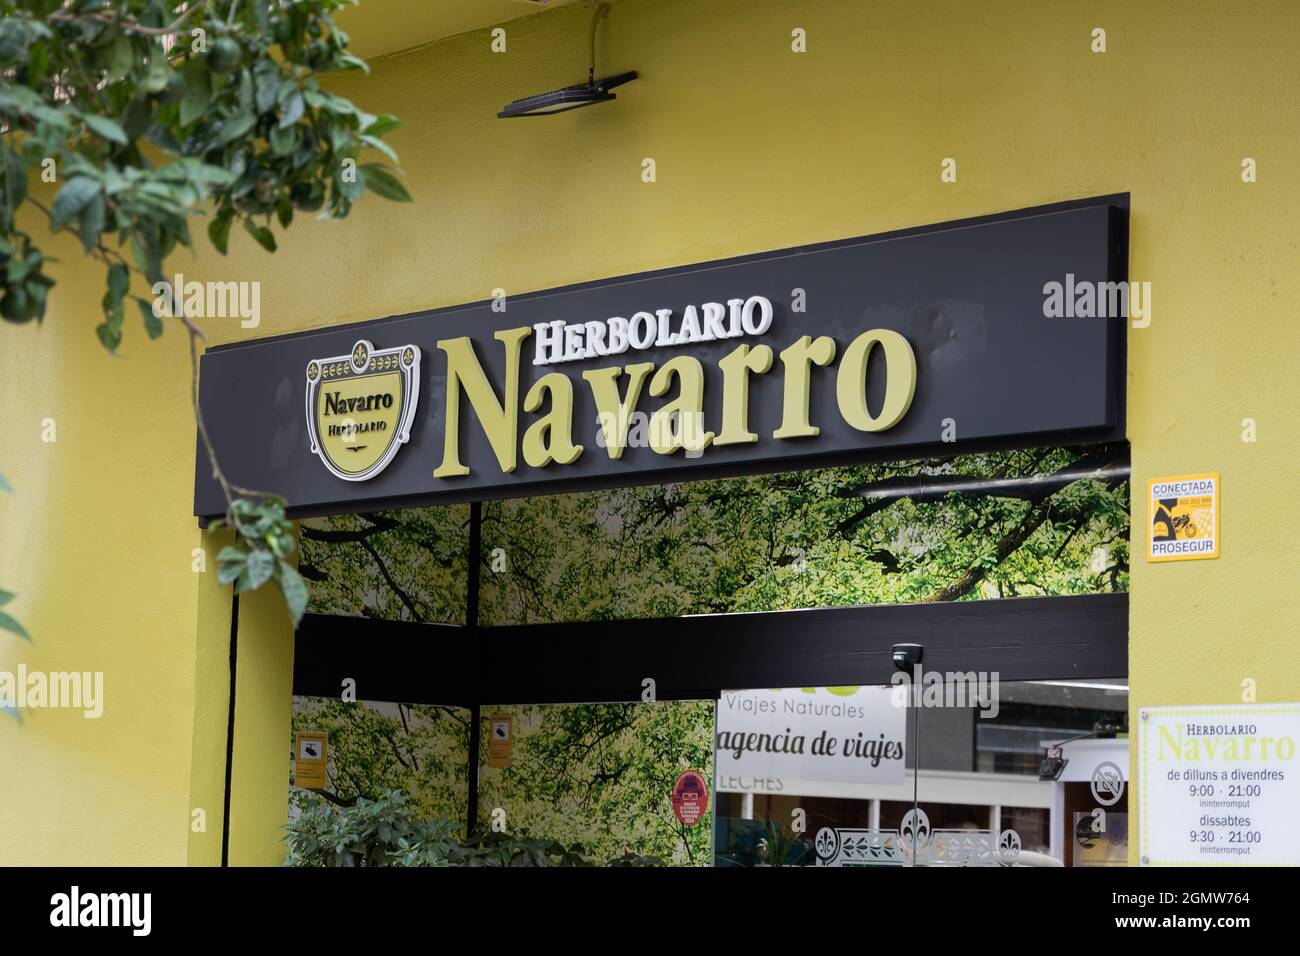 VALENCIA, ESPAÑA - 13 DE SEPTIEMBRE de 2021: El herbolario Navarro vende productos ecológicos, curables y naturales Foto de stock